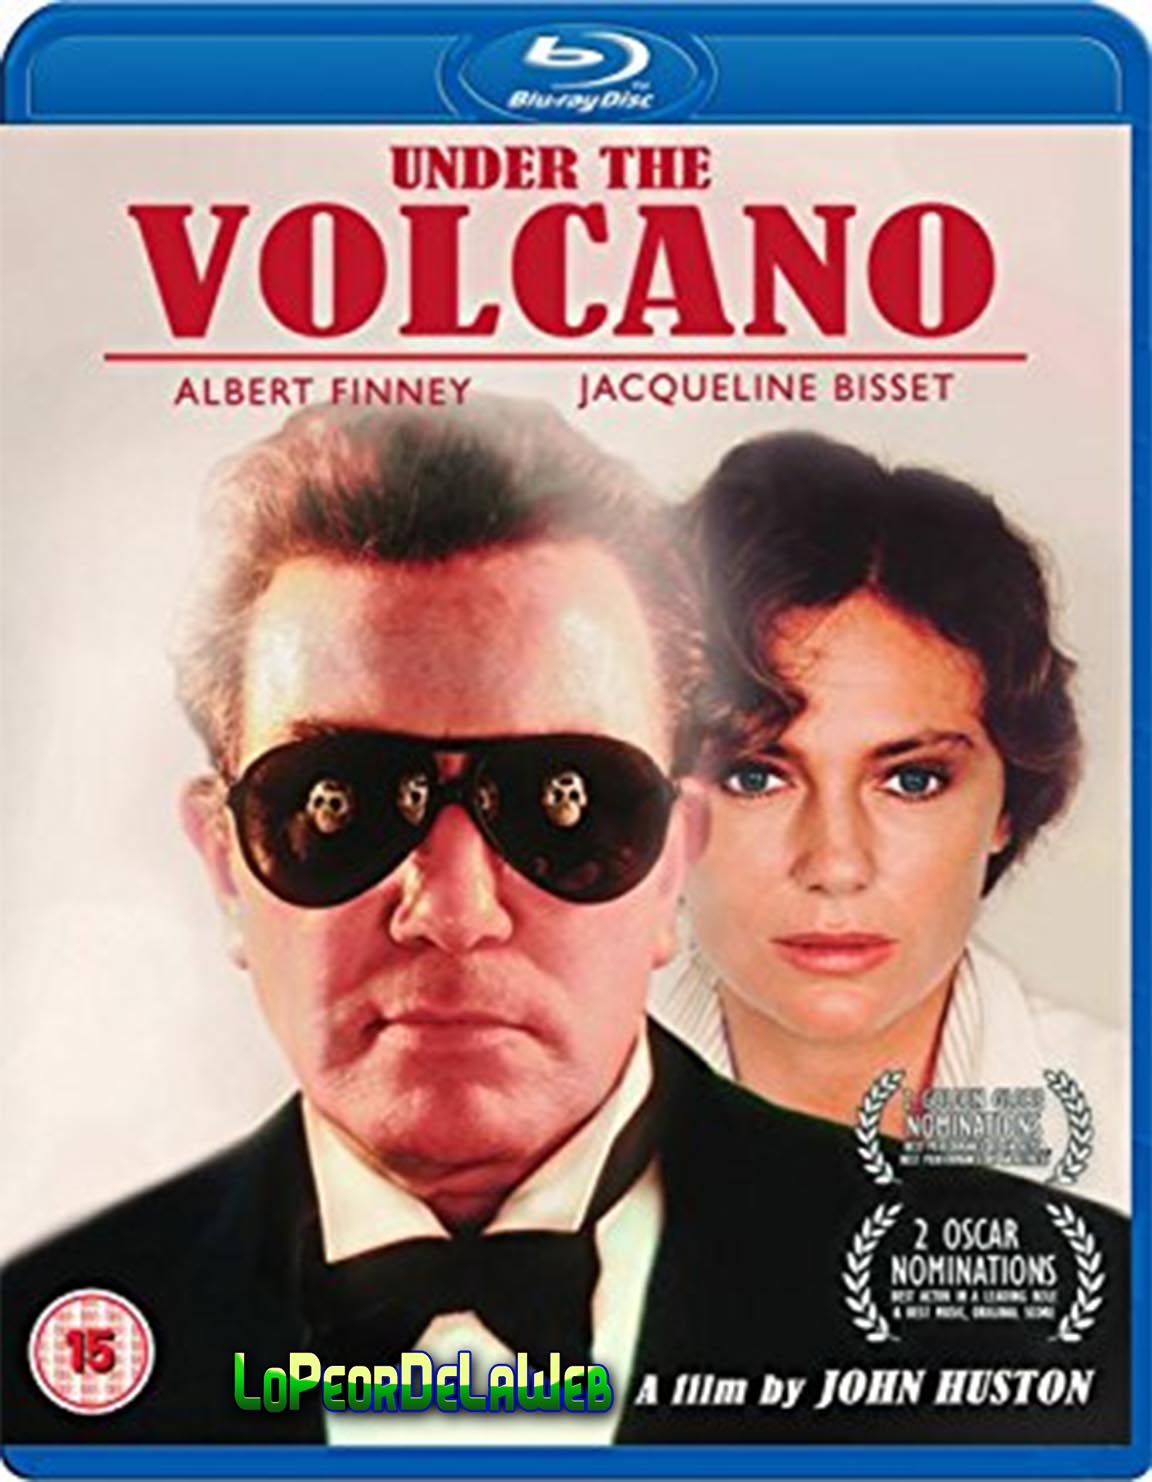 Under the Volcano (1984 / Albert Finney - Jacqueline Bisset)